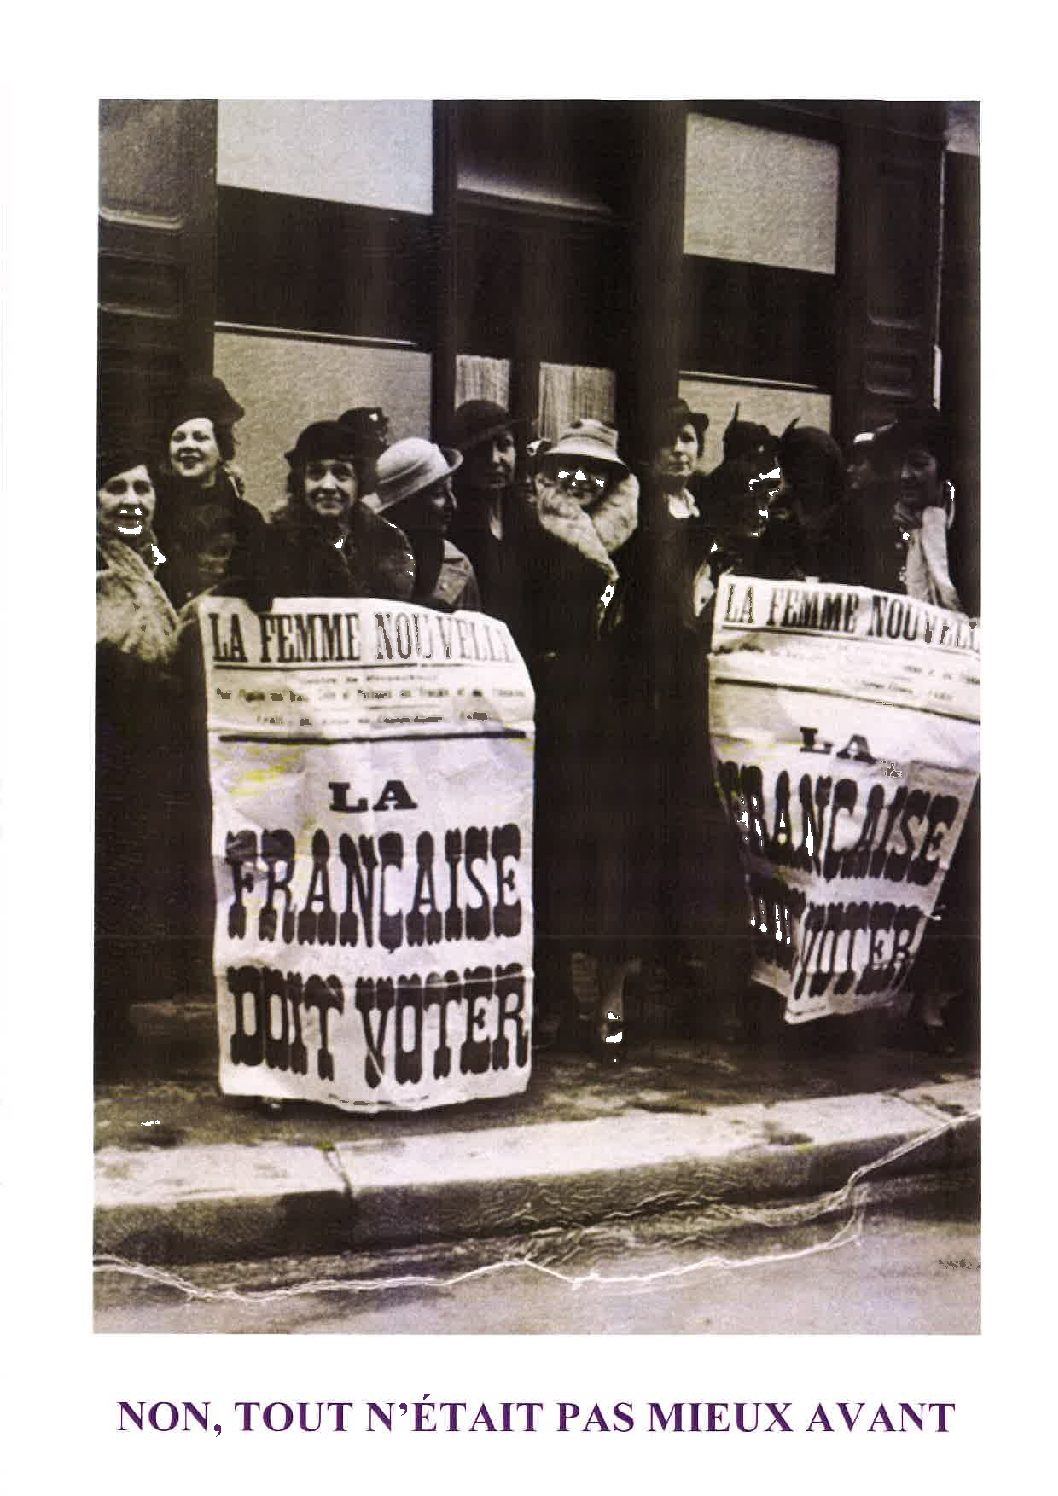 29 avril 1945 : Le 1er vote des françaises a lieu pour des élections municipales suite à une loi ratifiée le 21 avril 1944 par Charles de Gaulle, alors président de la République.